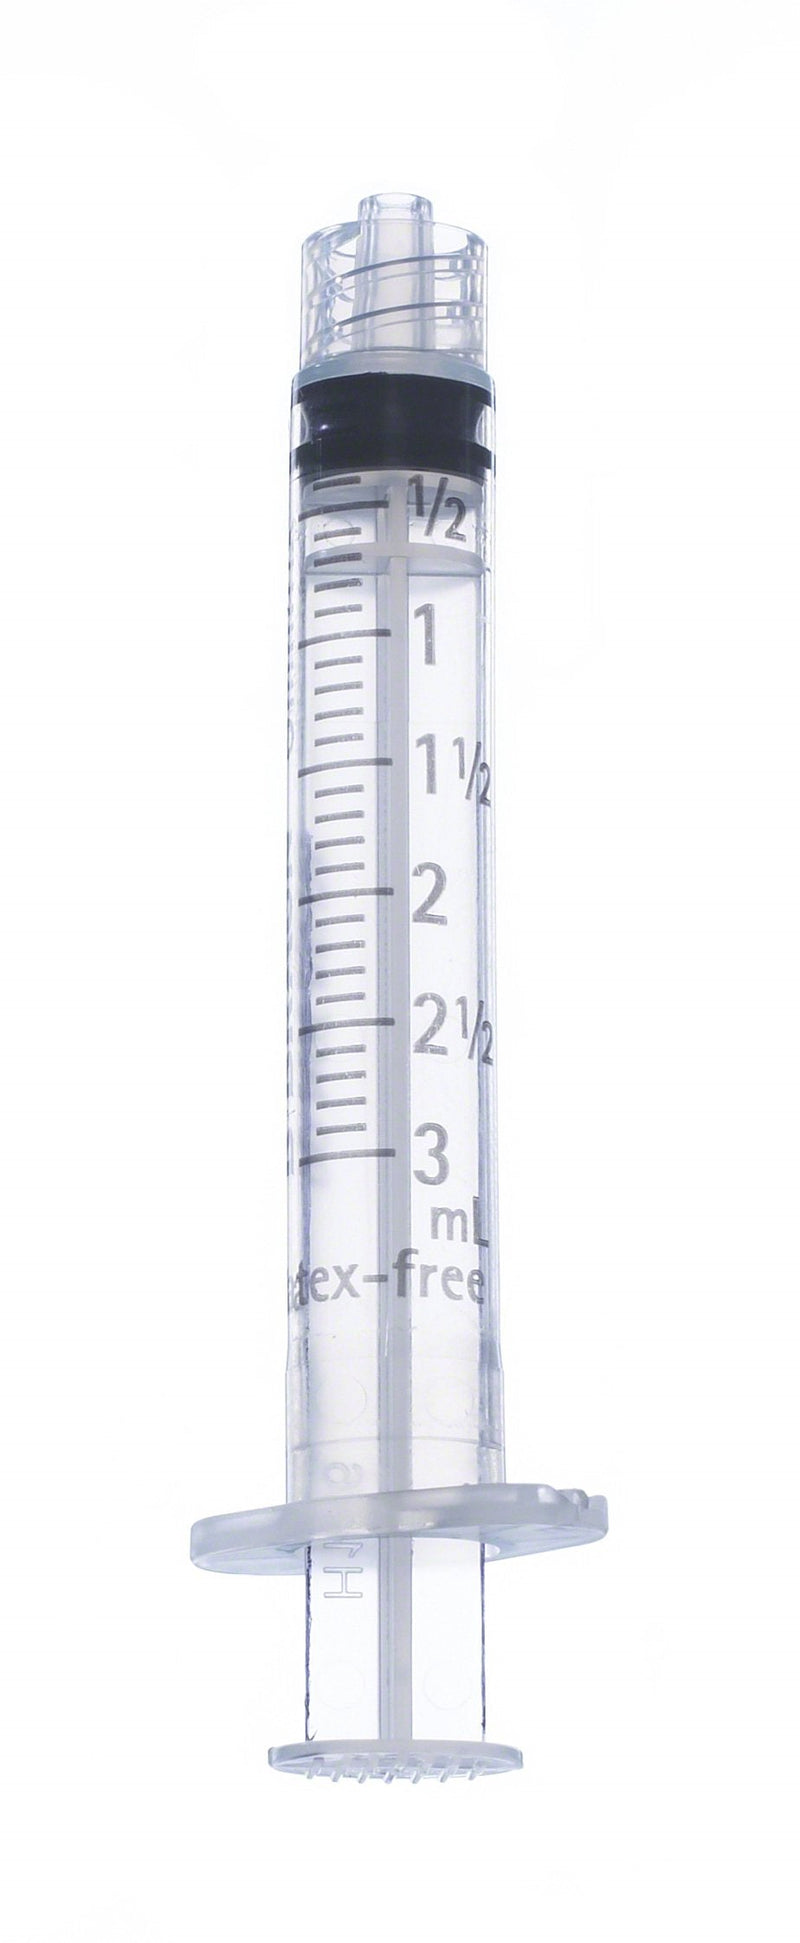 General Purpose Syringe Omnifix 3 mL Luer Lock Tip Without Safety | B. Braun Medical | SurgiMac